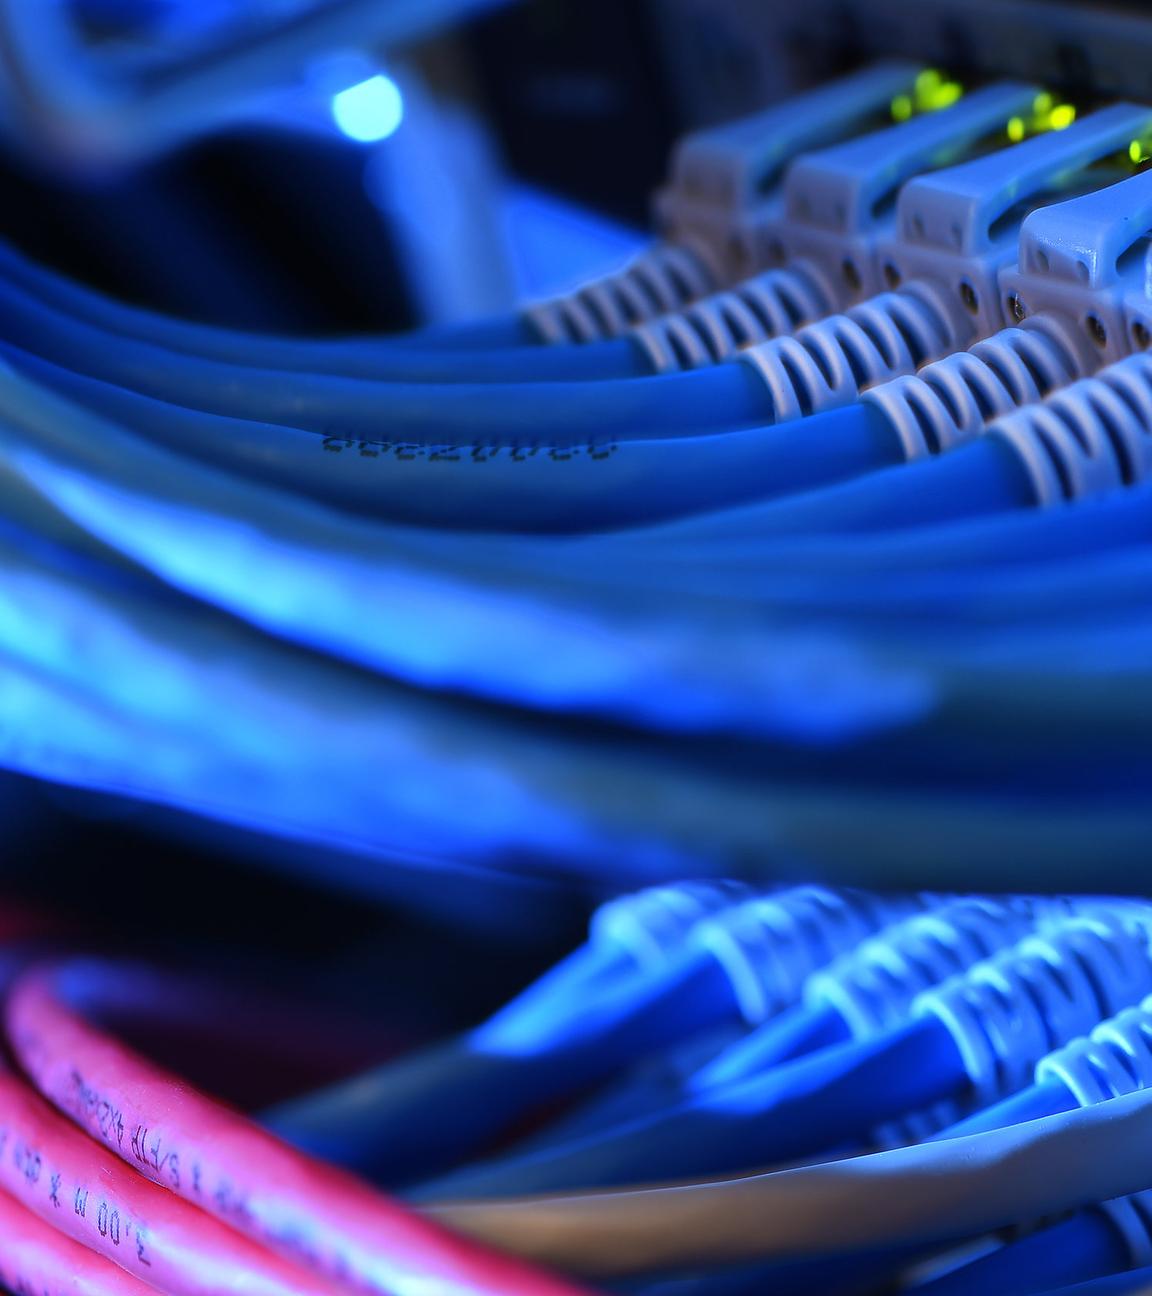 Archiv: Mehrere Netzwerk-Kabelstecker leuchten am 16.10.2014 in der Netzwerkzentrale